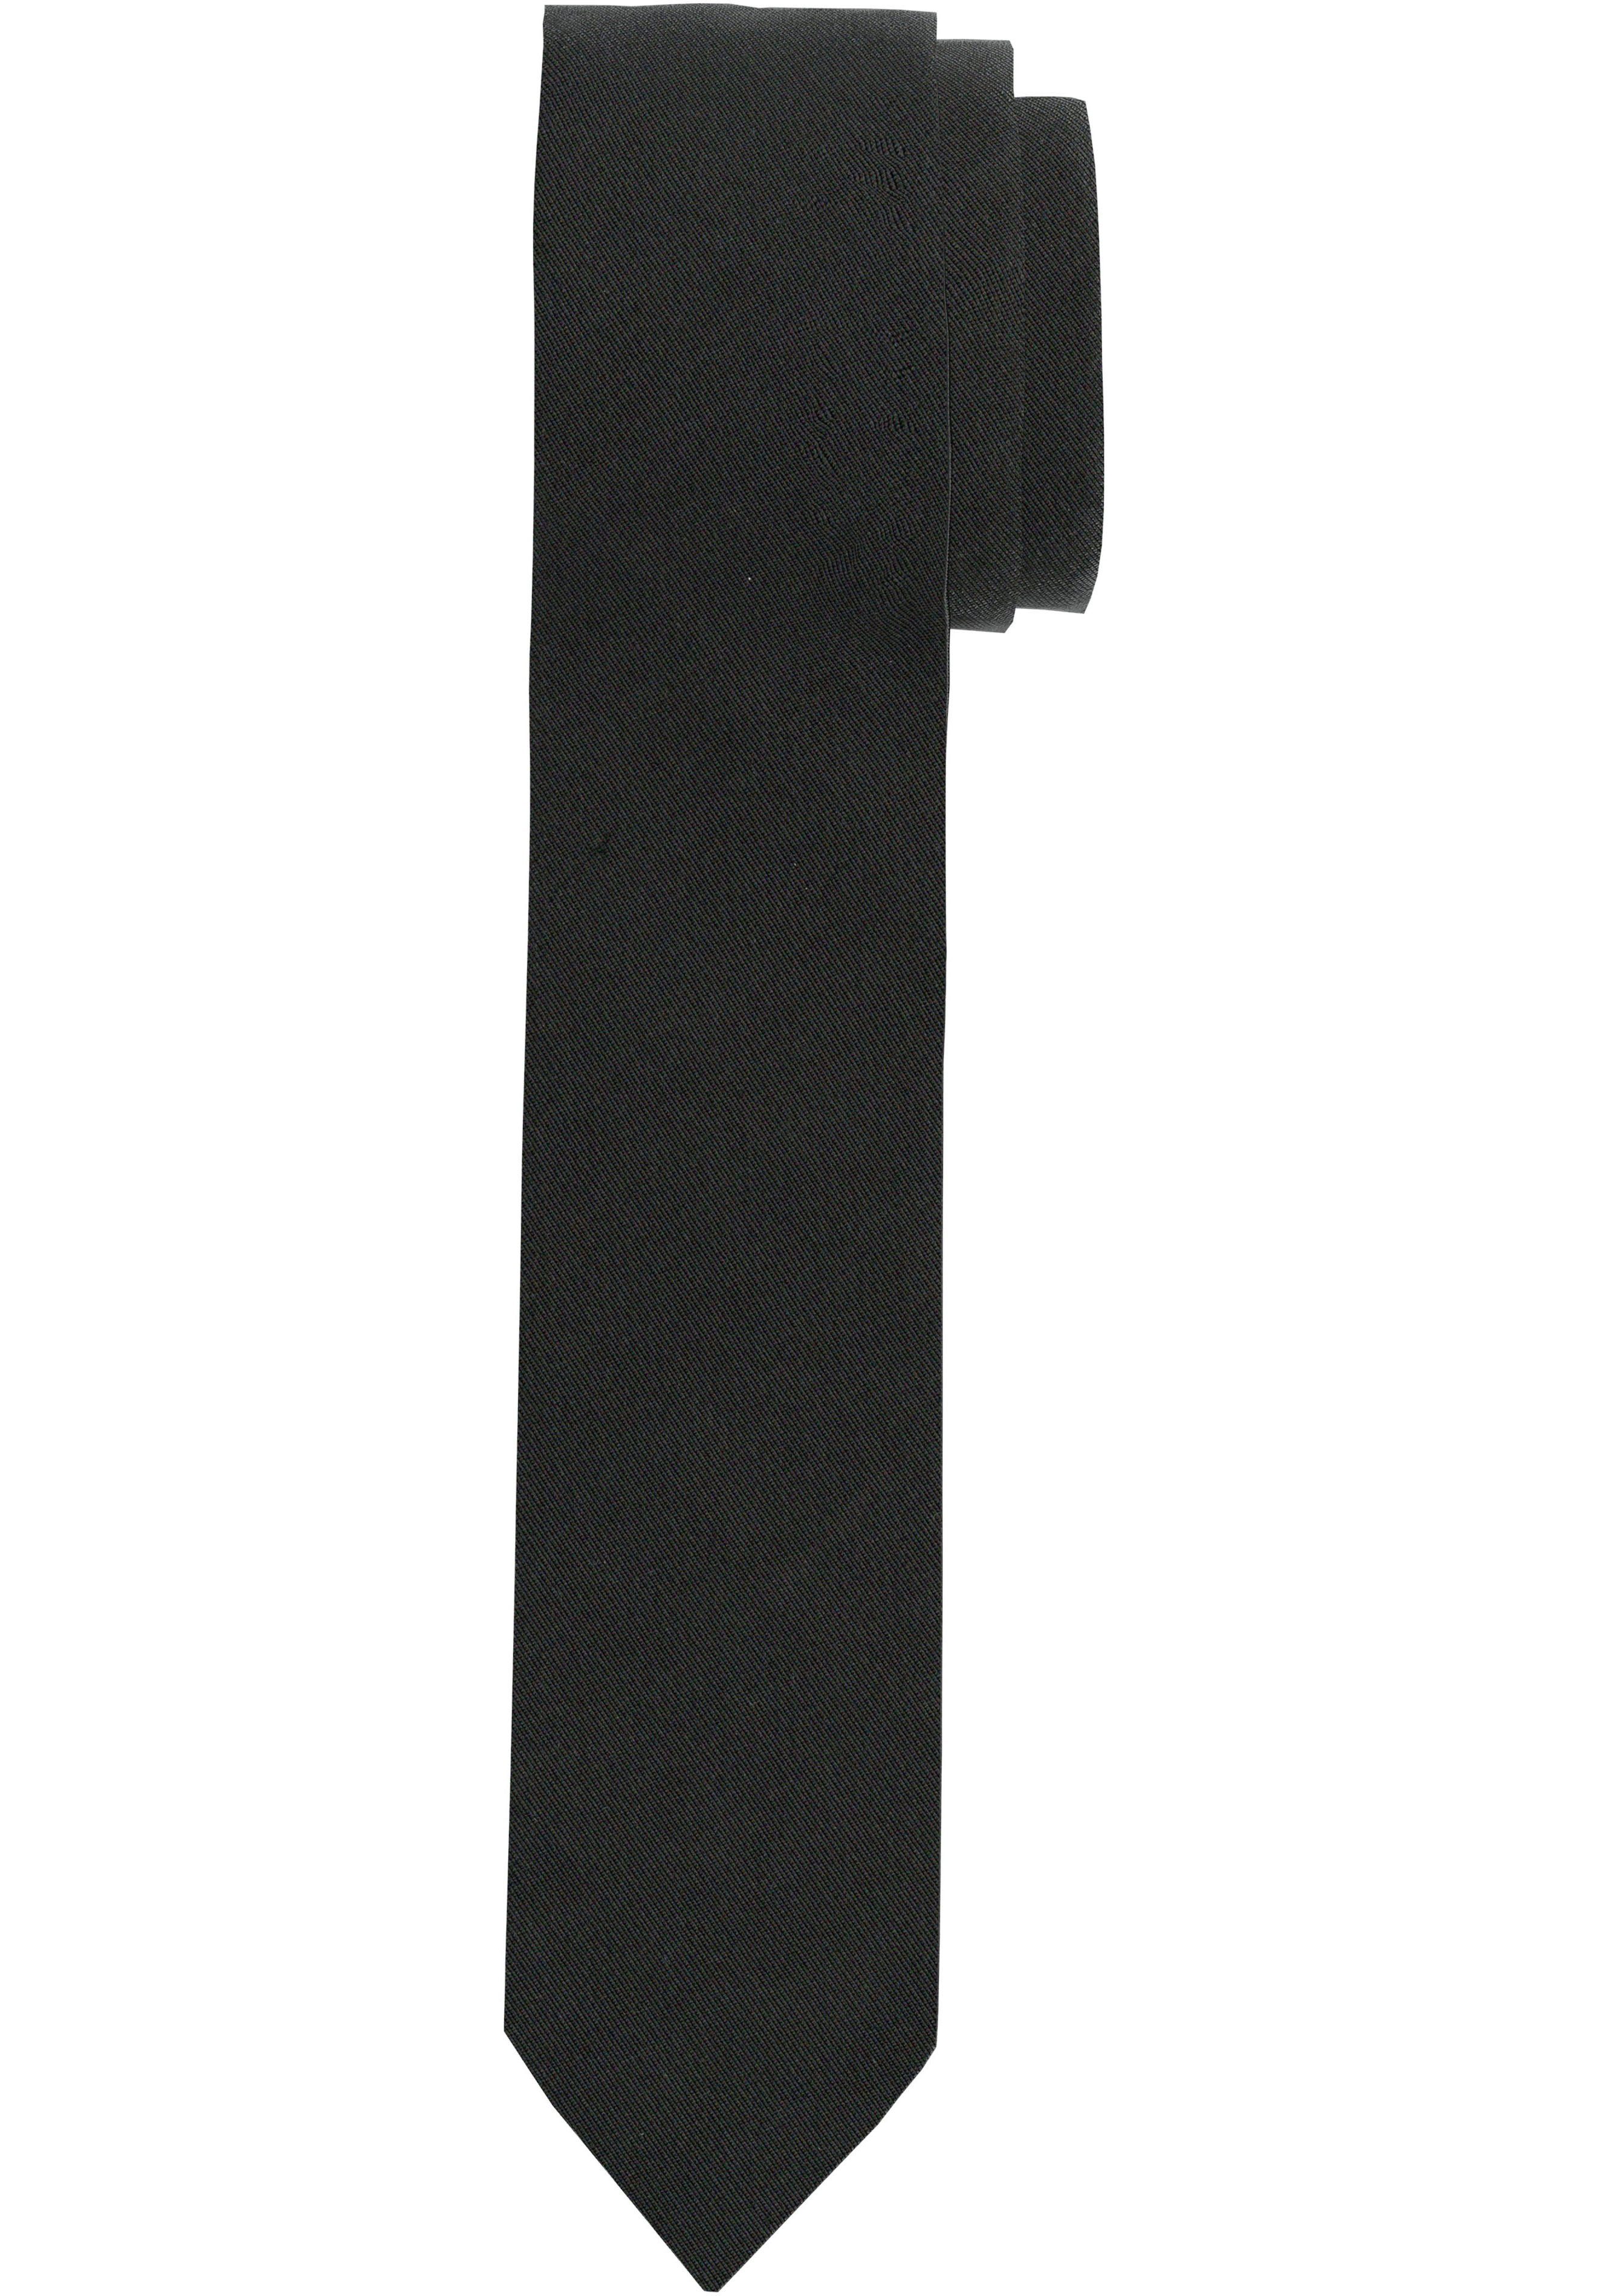 OLYMP Krawatte Slim Krawatte schwarz | Breite Krawatten